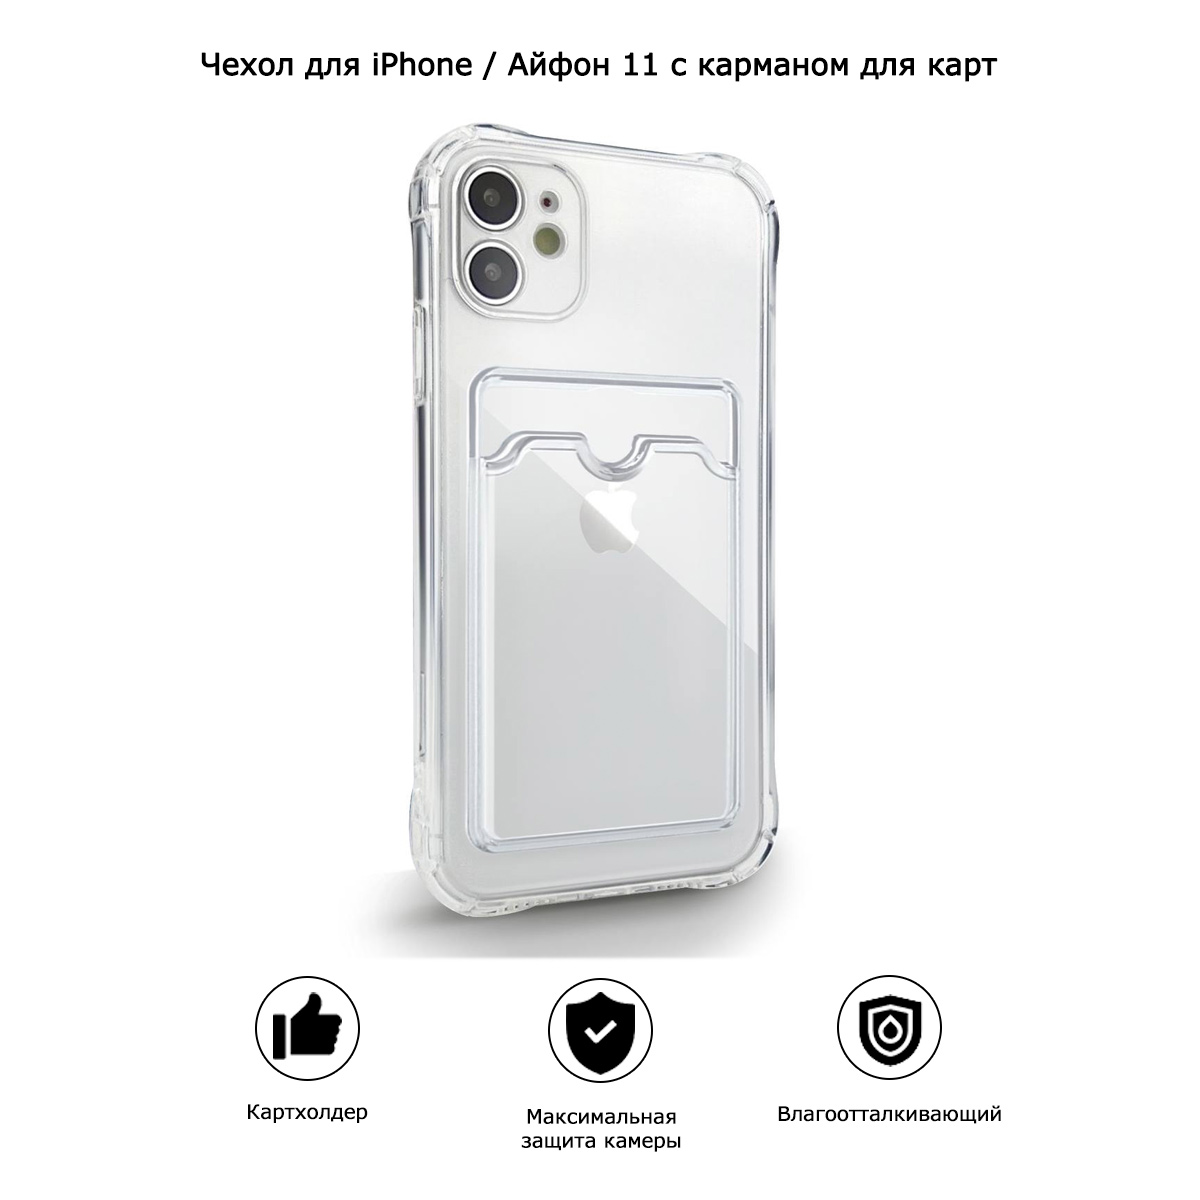 Чехол для iPhone / Айфон 11 с карманом для карт (прозрачный)